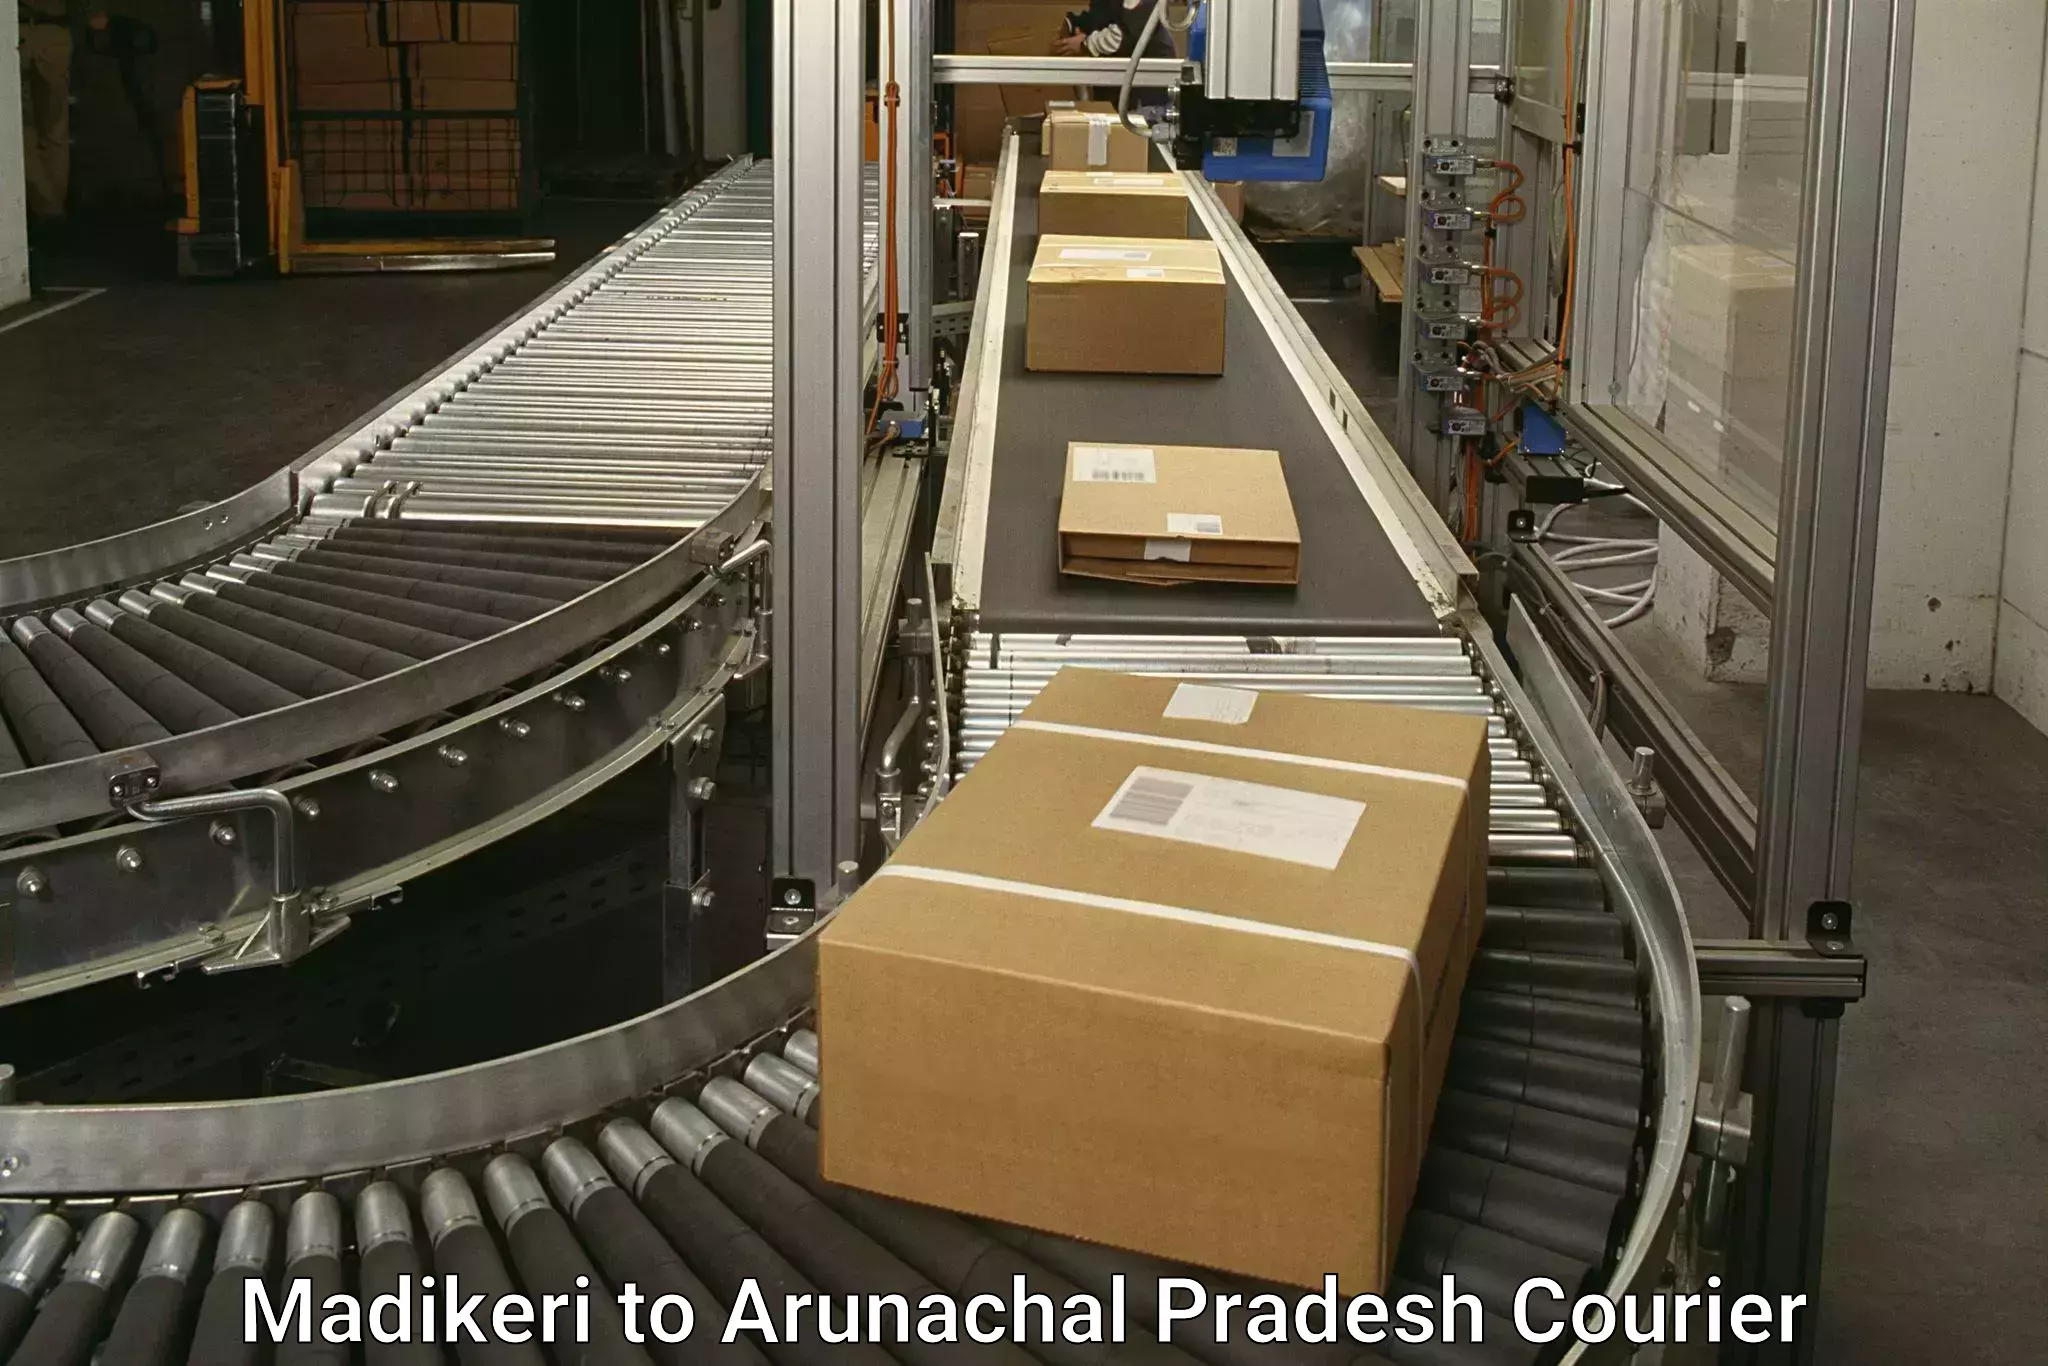 Express shipping in Madikeri to Arunachal Pradesh